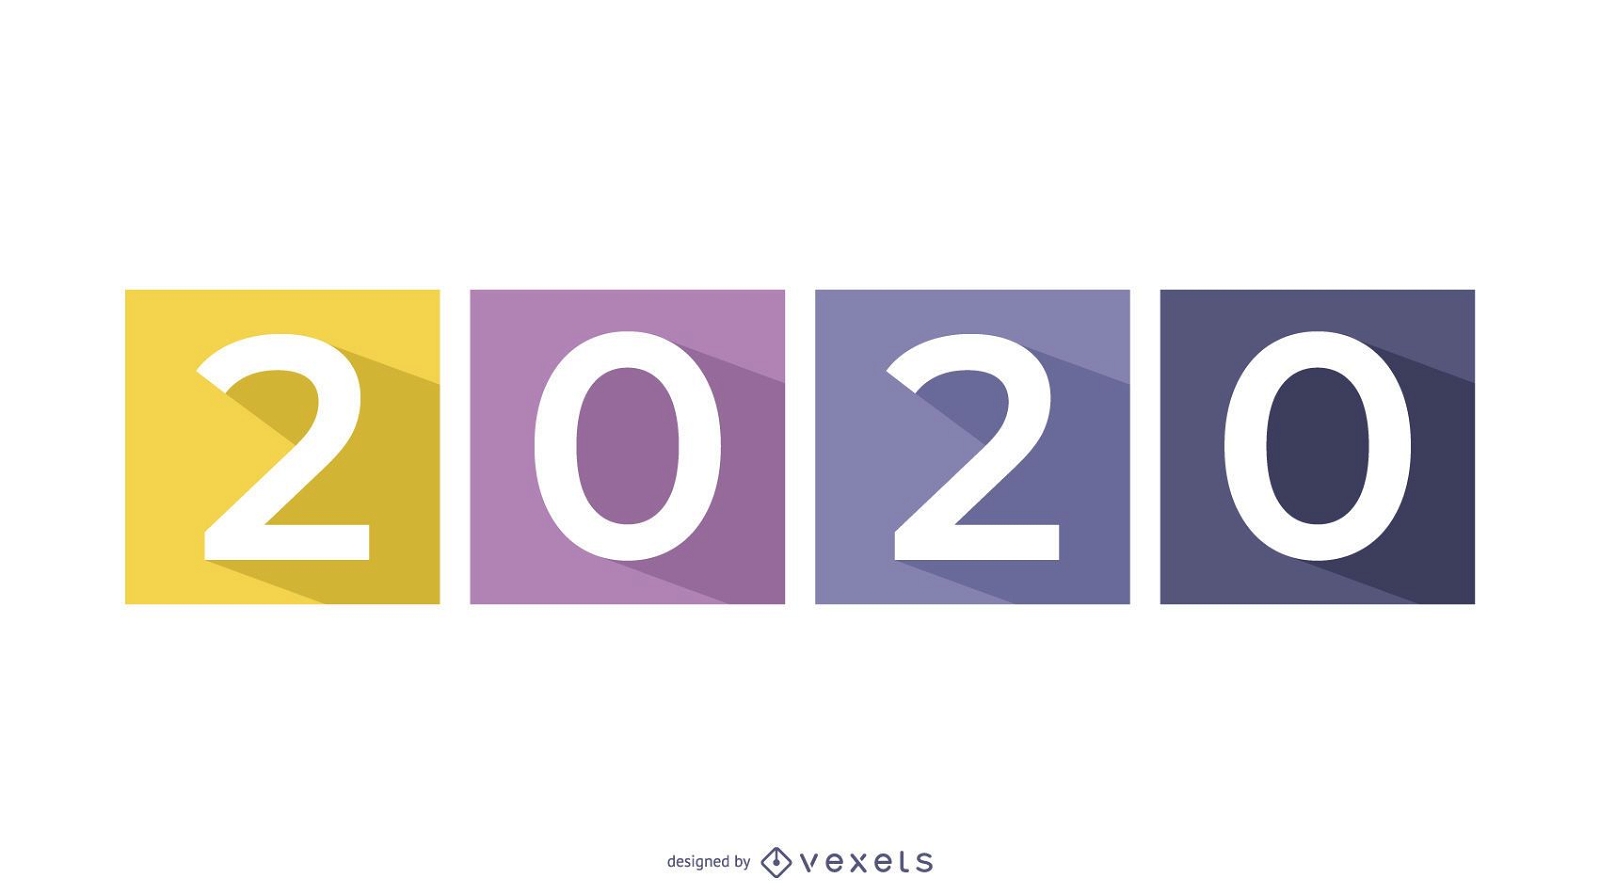 Long Shadowed 2015 ?ber getrennten farbigen Quadraten